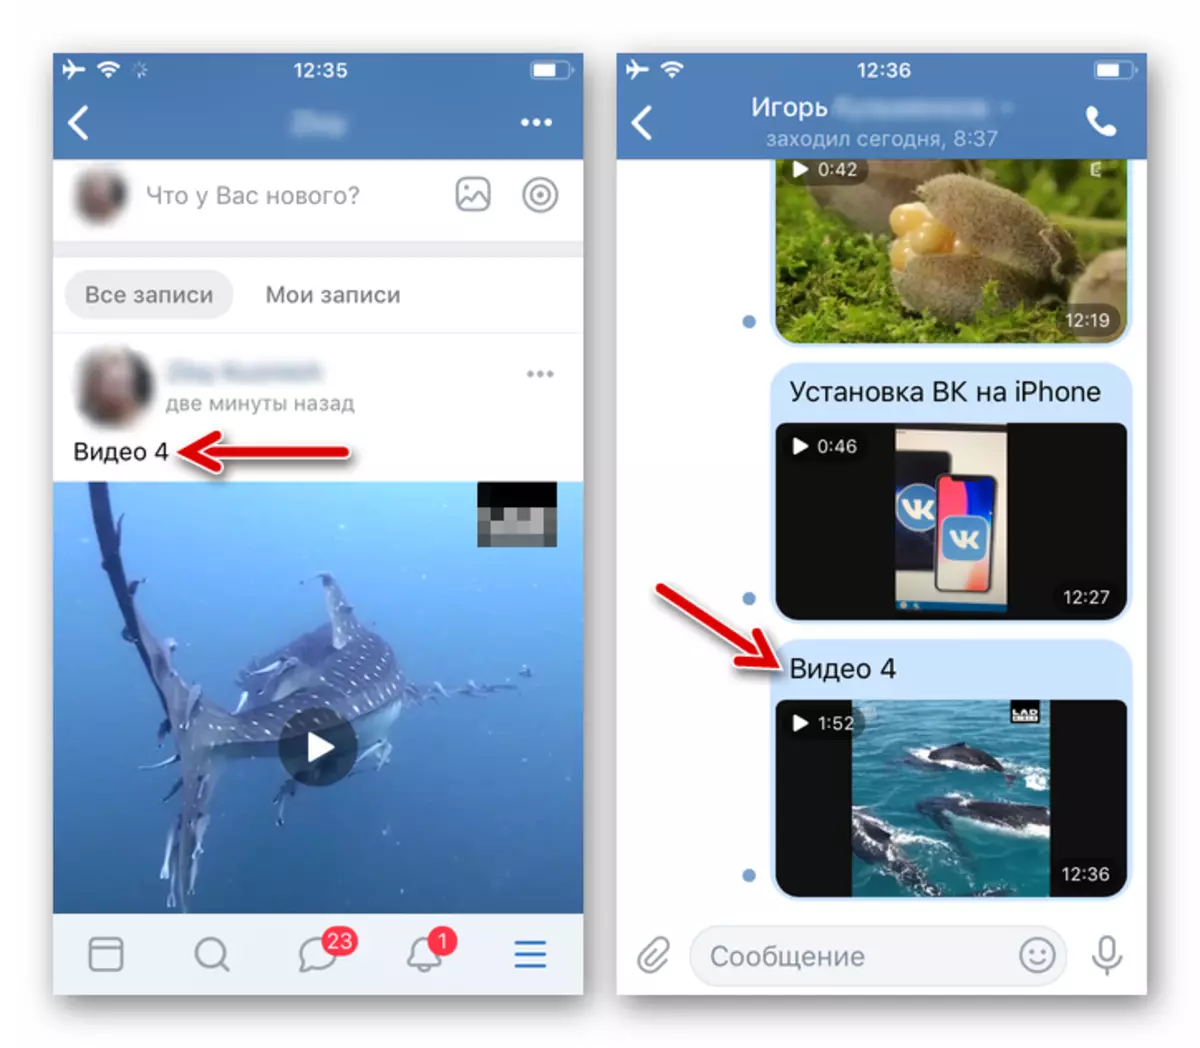 ВКонтакте для iPhone - відеоролик викладений в соцеть і відправлений в повідомленні через файловий менеджер для iOS